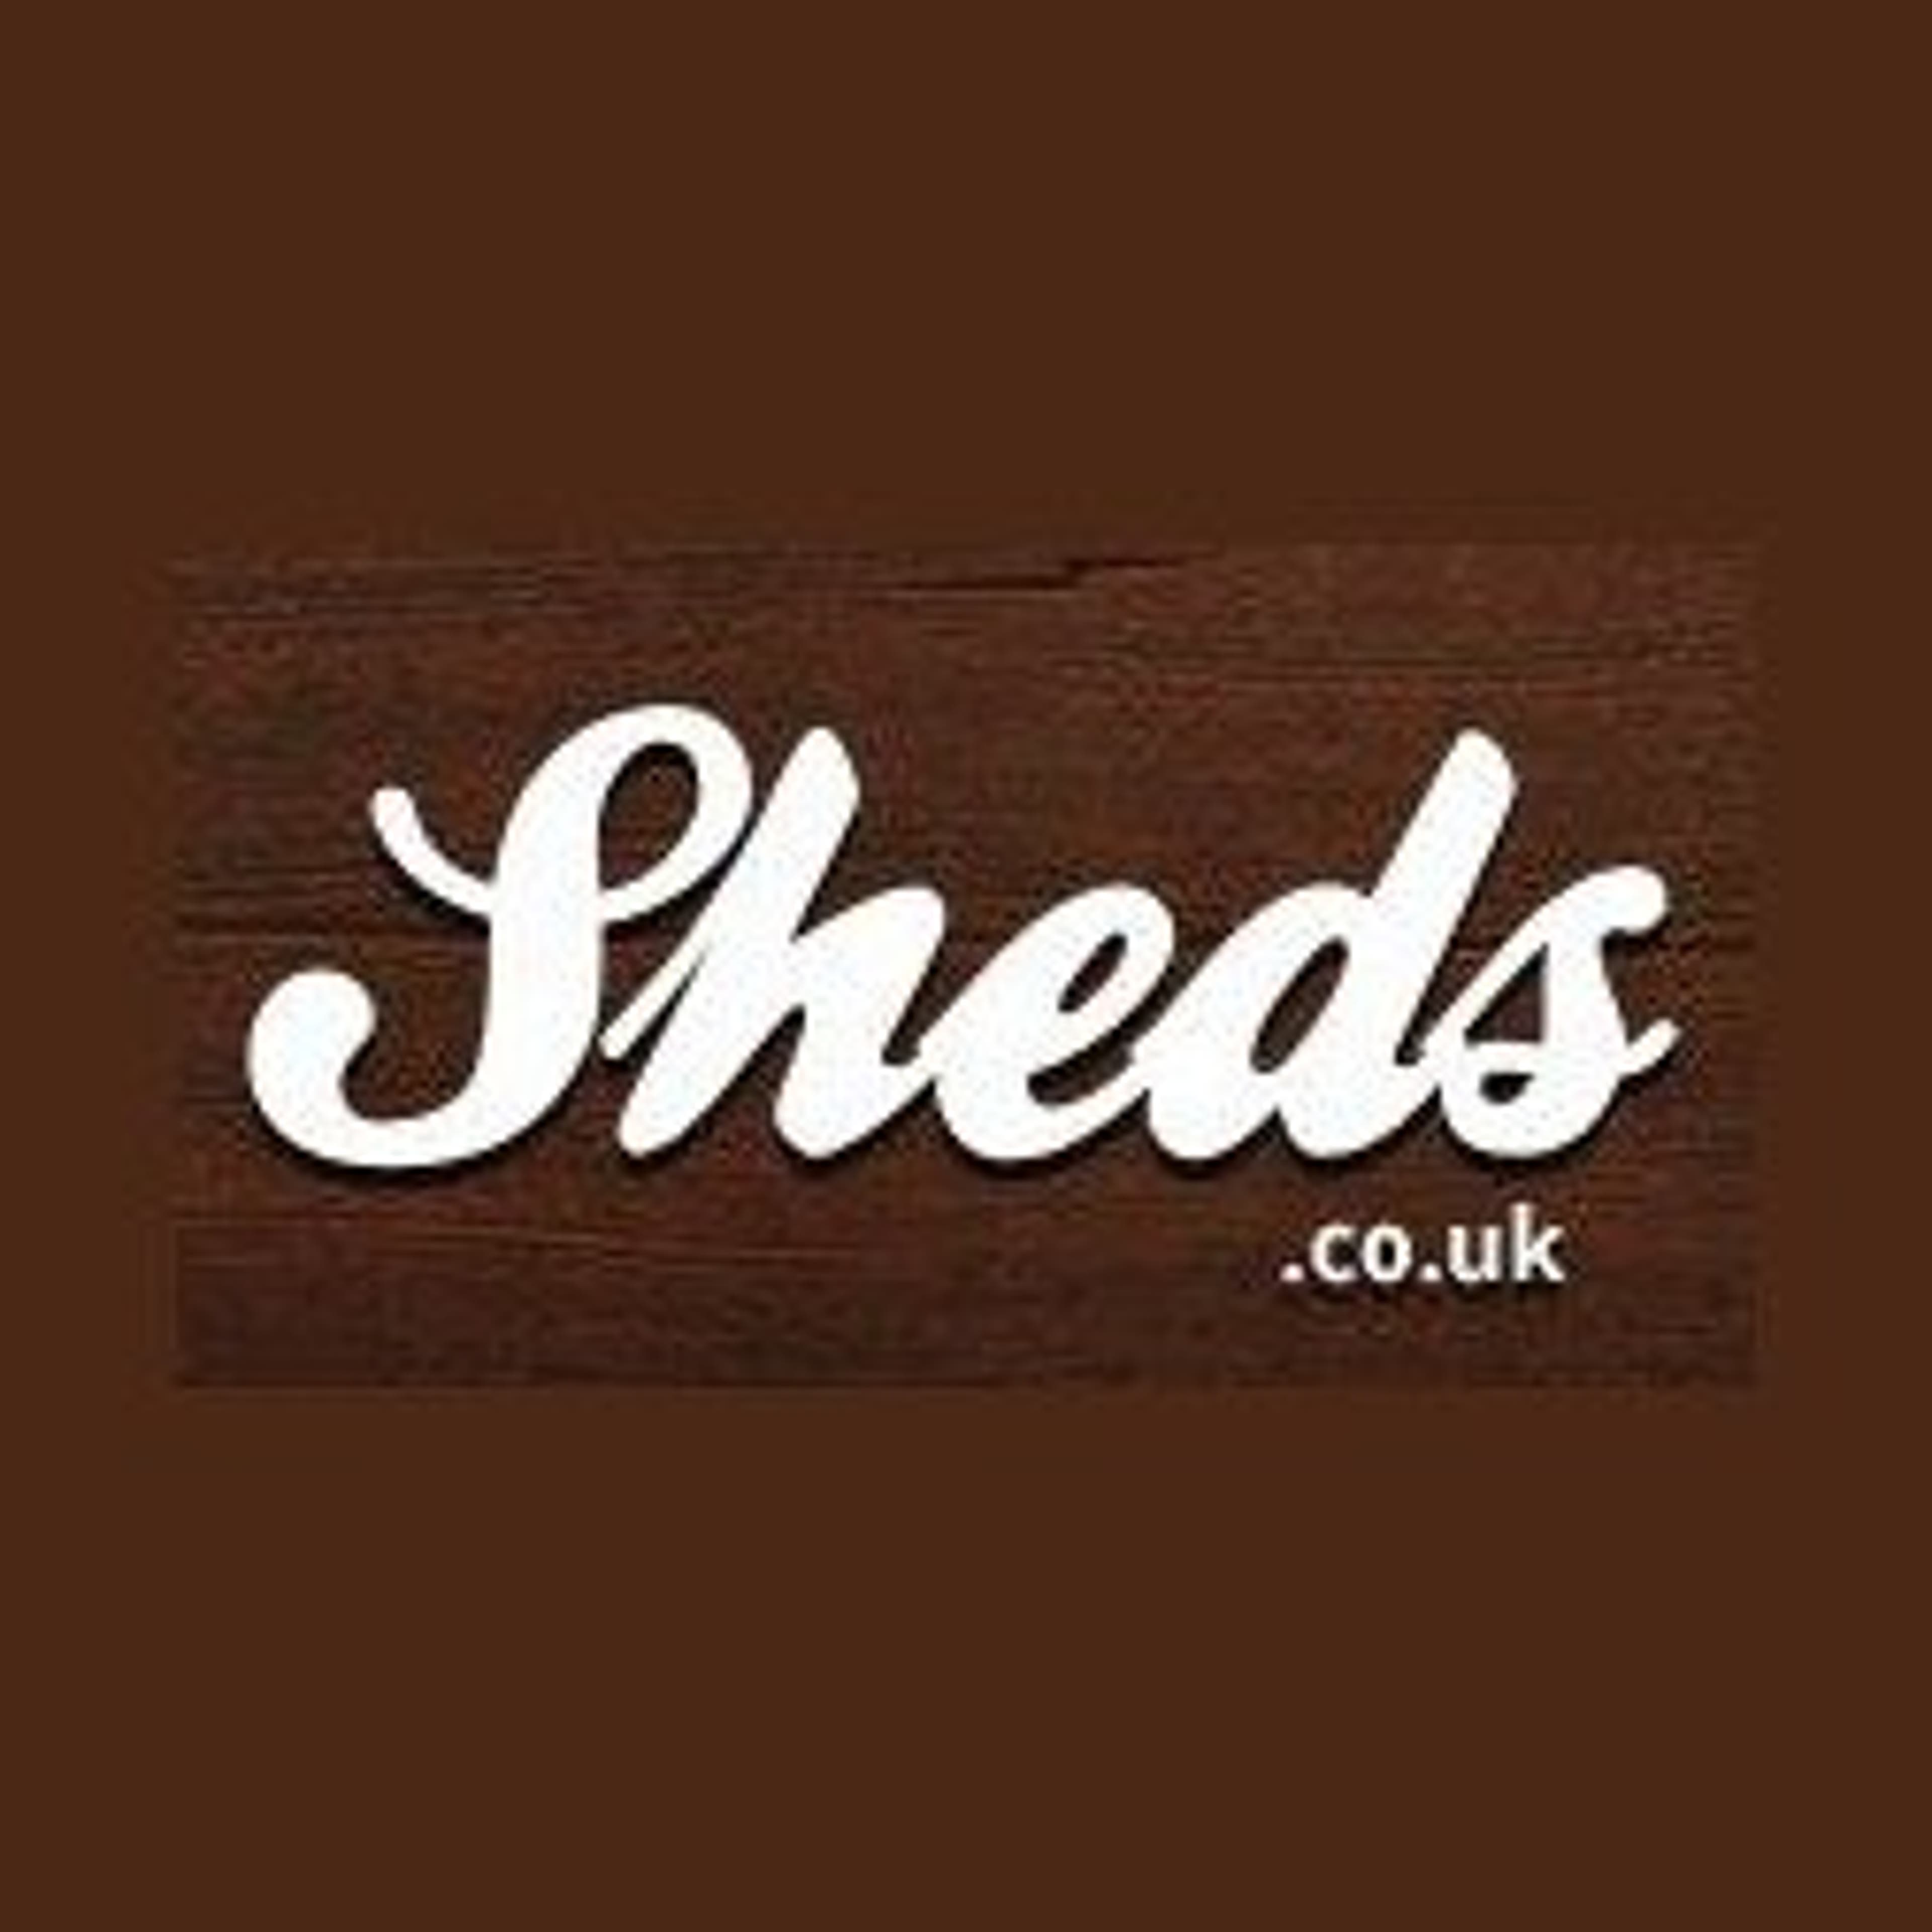  Sheds.co.uk 